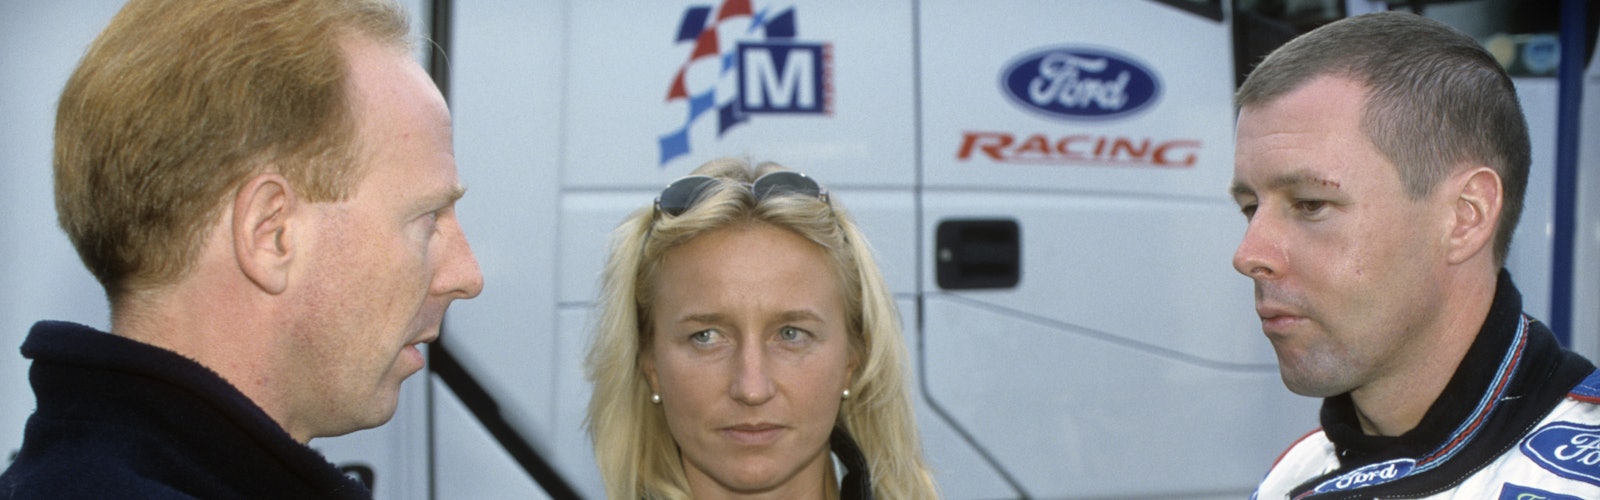 2000 Sanremo Rally  world wide copyright: McKlein